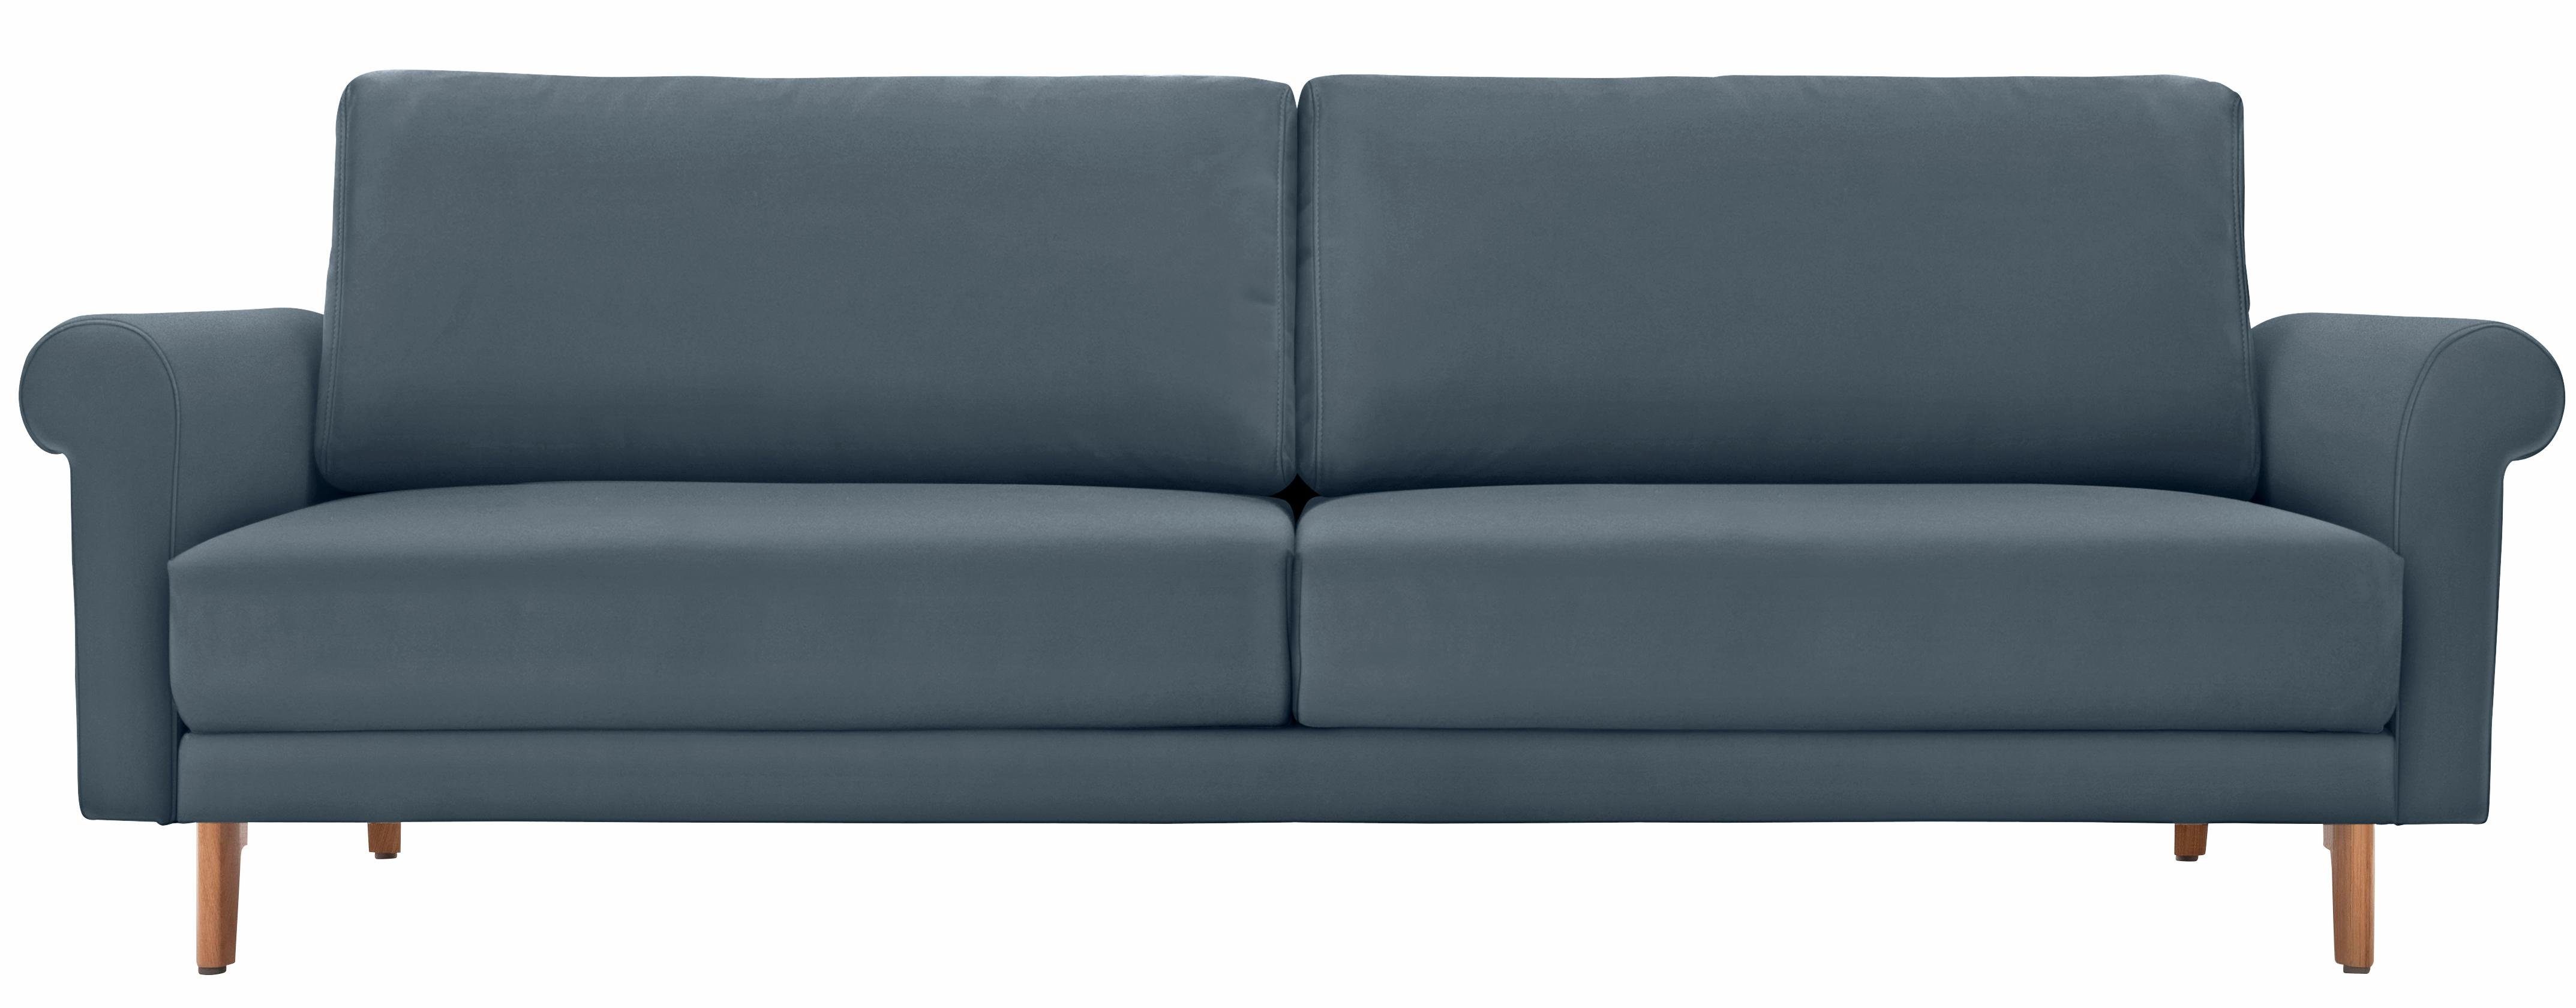 hülsta sofa 3-Sitzer hs.450, modern Landhaus, Breite 208 cm, Füße in Nussbaum